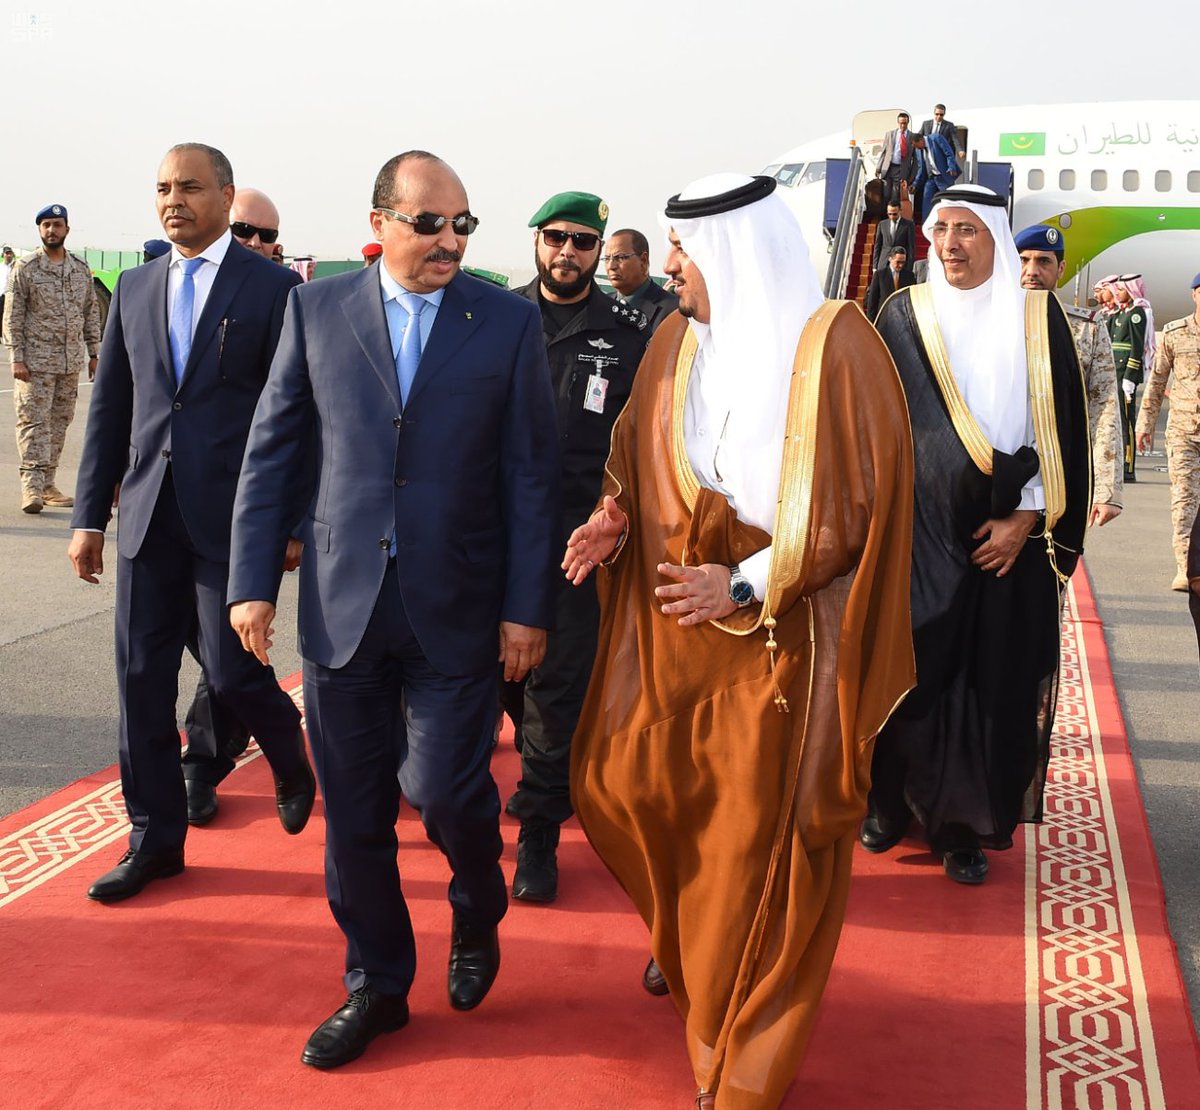 بالصور.. رؤساء موريتانيا وفلسطين والجابون وتونس وكازاخستان يصلون الرياض